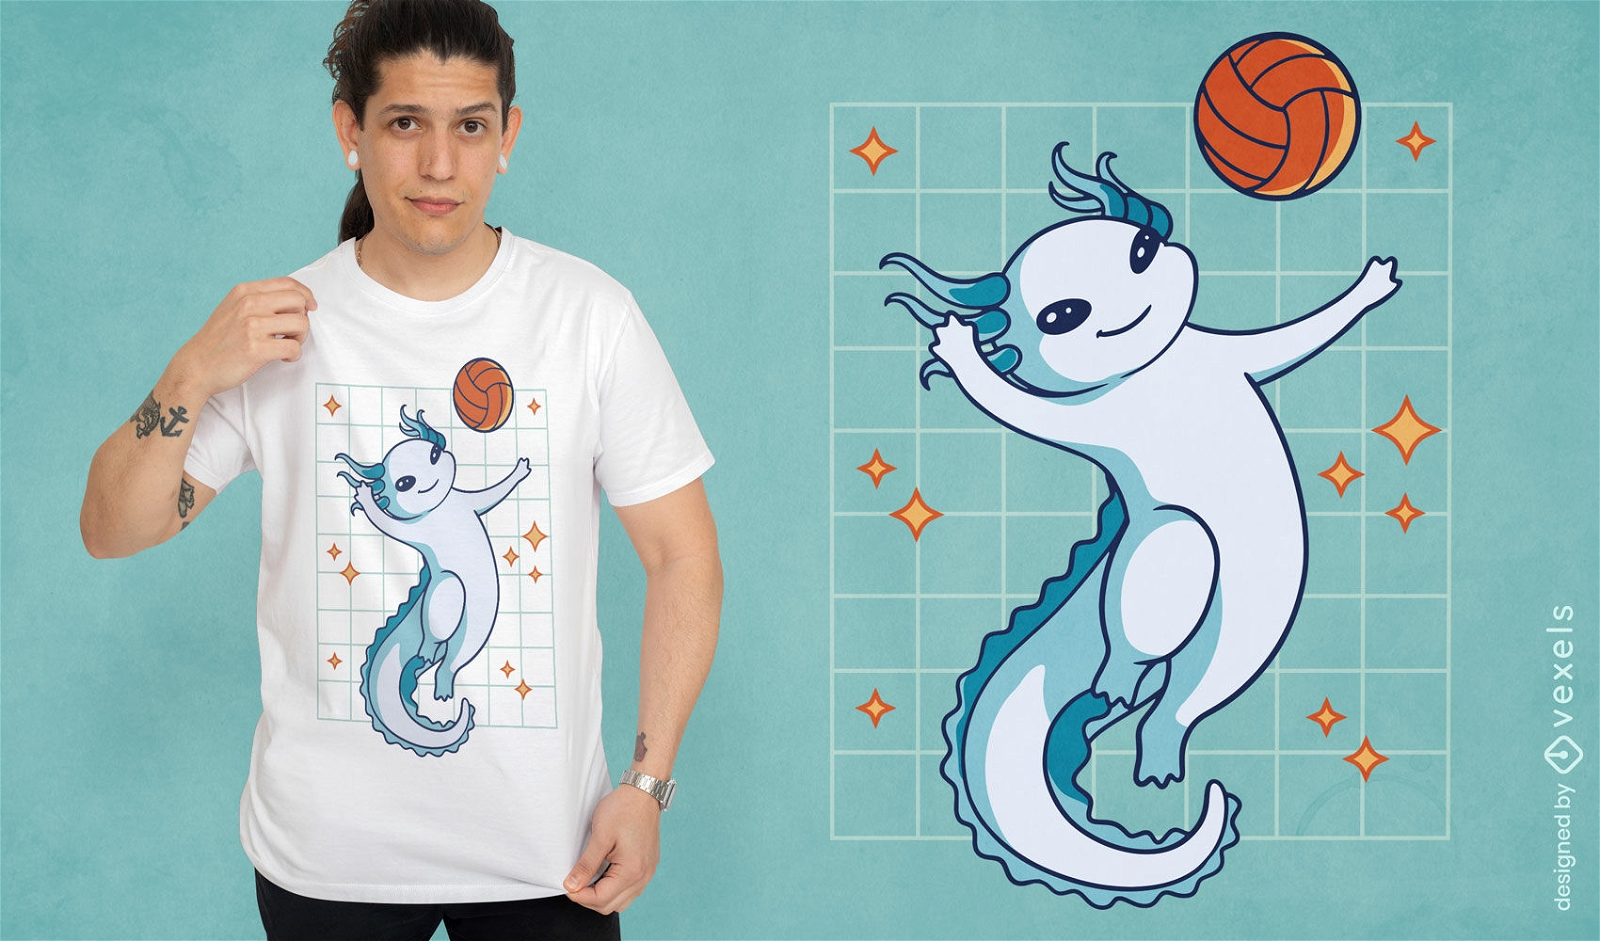 Axolotl jugando dise?o de camiseta de baloncesto.